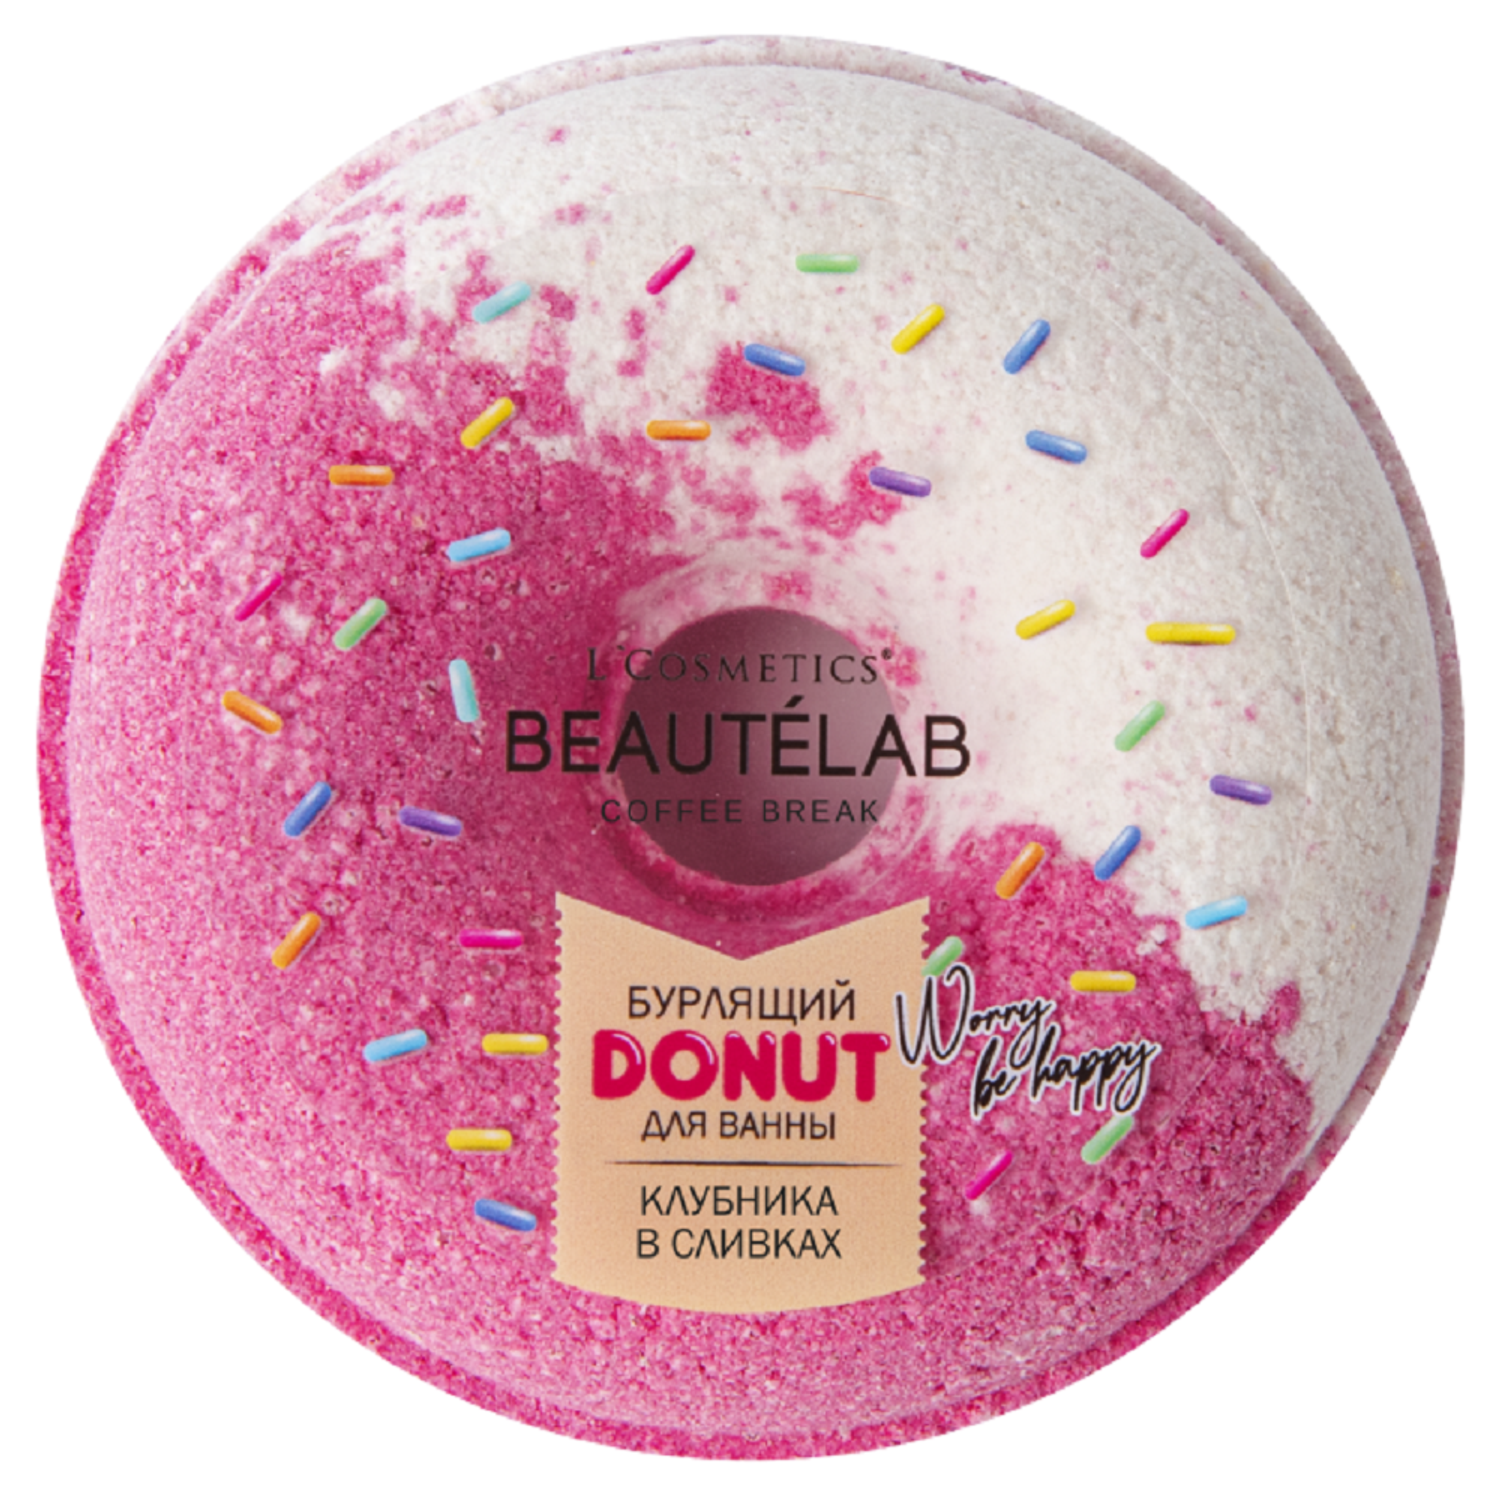 Бурлящий шар для ванны L'Cosmetics Donut 160г клубника в сливках - фото 1